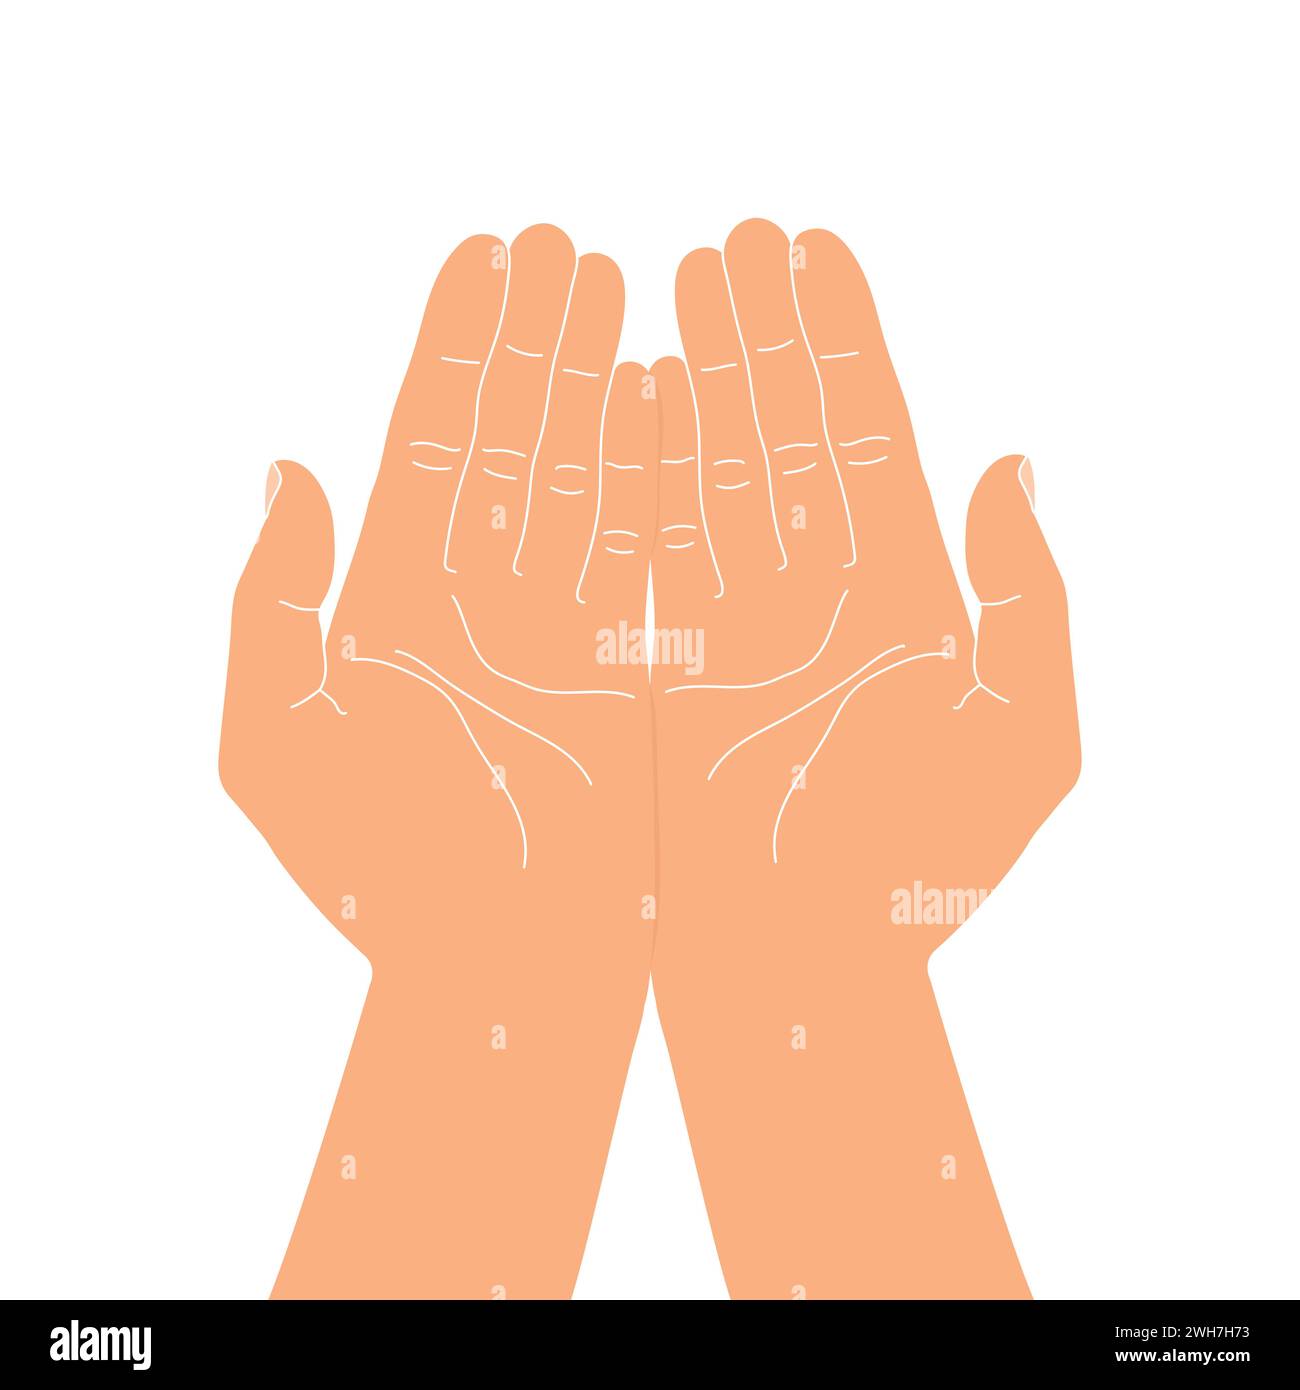 Handbewegung geben oder nehmen. Handschalen mit offenen Handflächen. Hände halten etwas vorsichtig. Vektorabbildung Stock Vektor